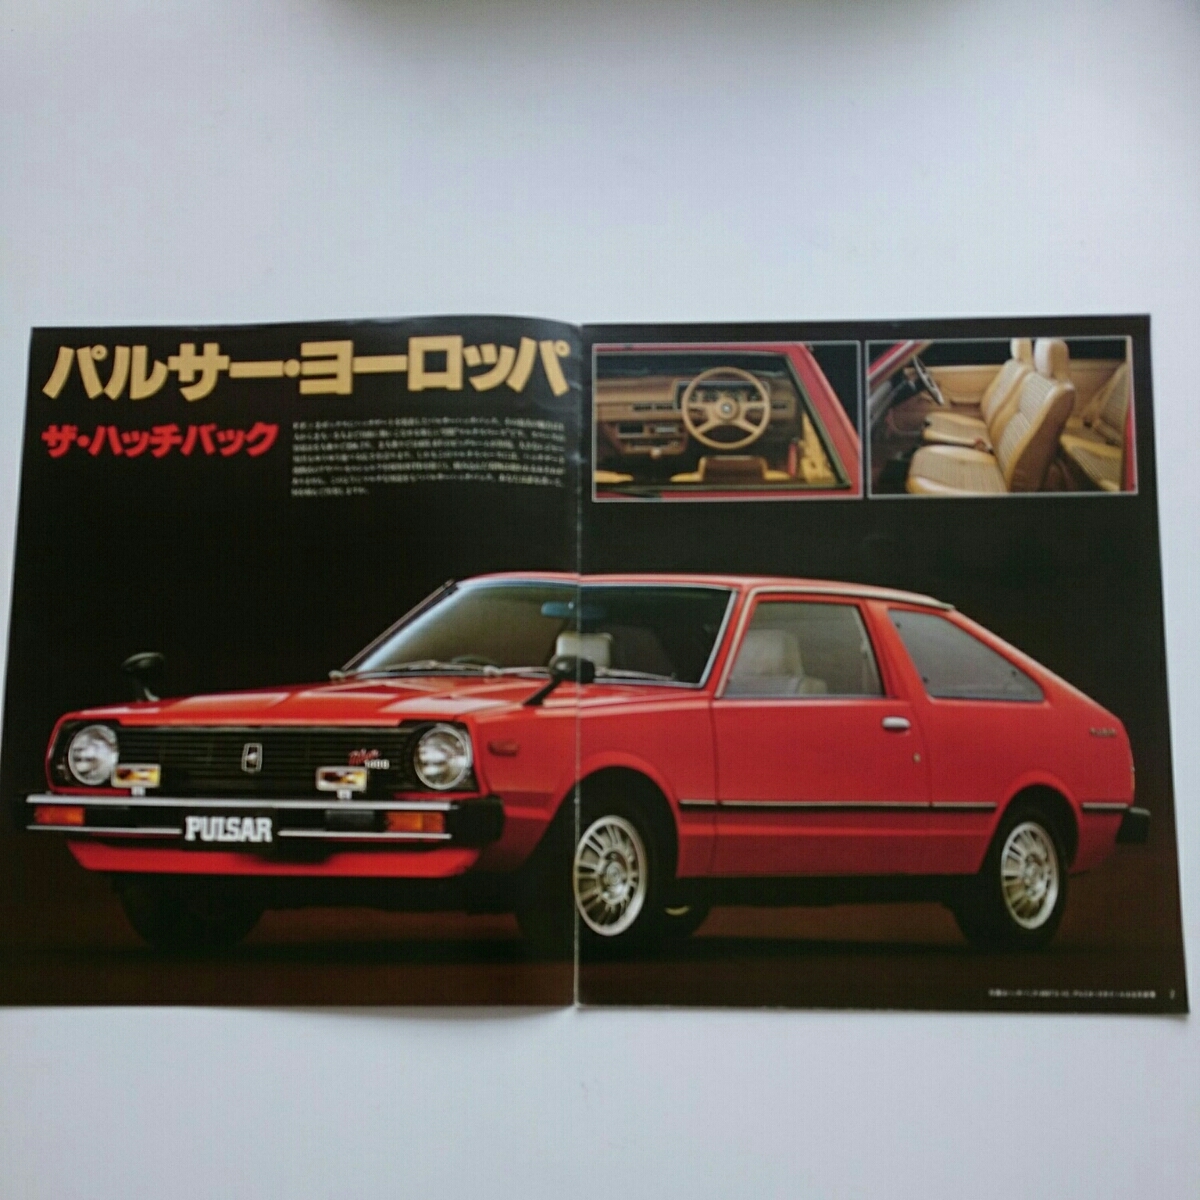  Pulsar & Auster каталог Showa 54 год 3 месяц выпуск не прочитан товар соответствует Showa. распроданный машина 